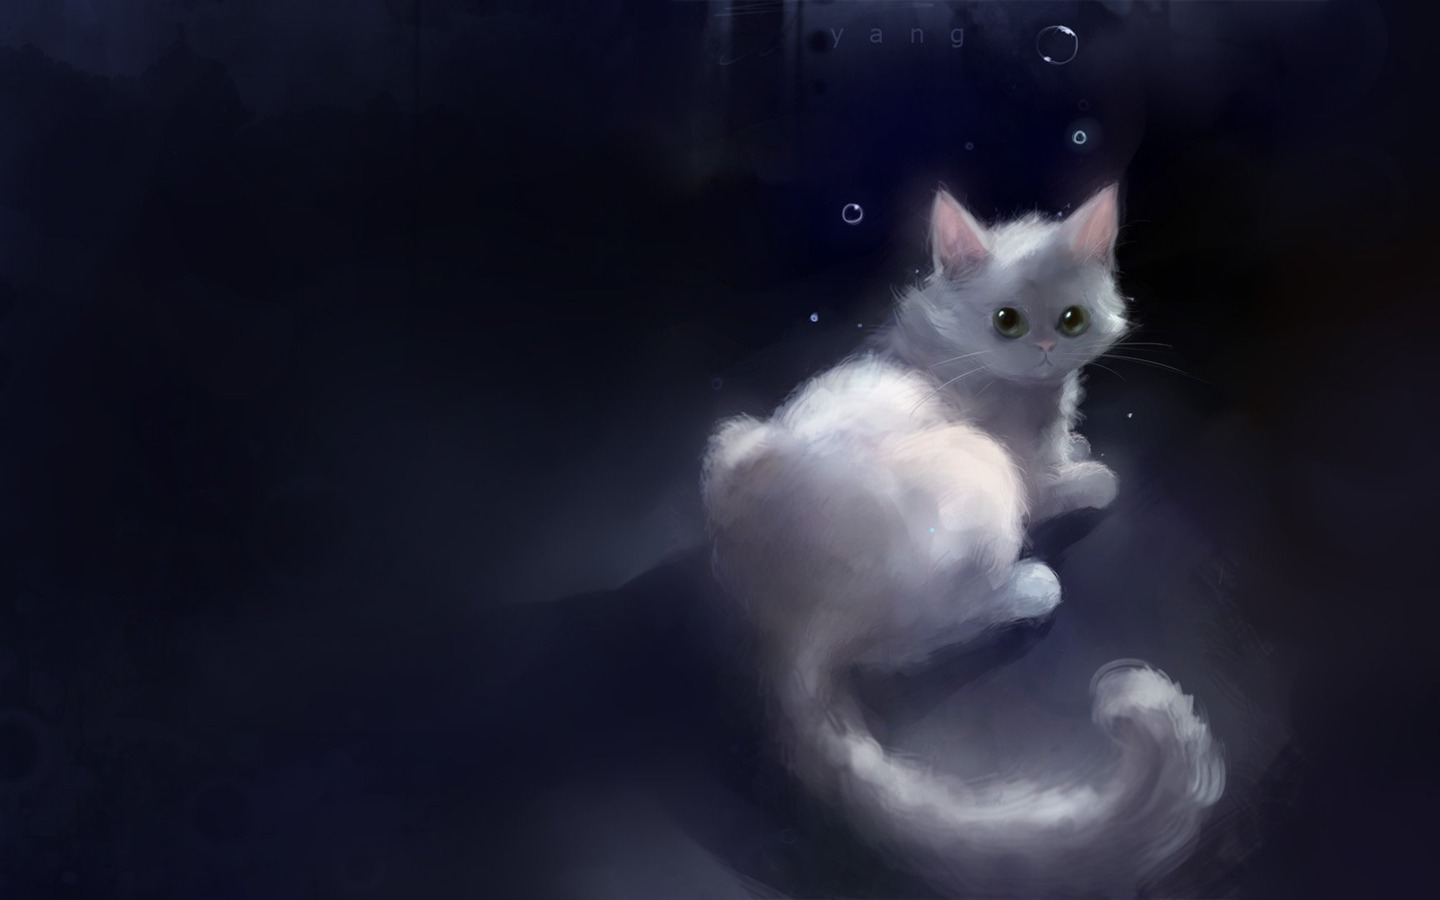 Apofiss pequeño gato negro papel pintado acuarelas #20 - 1440x900